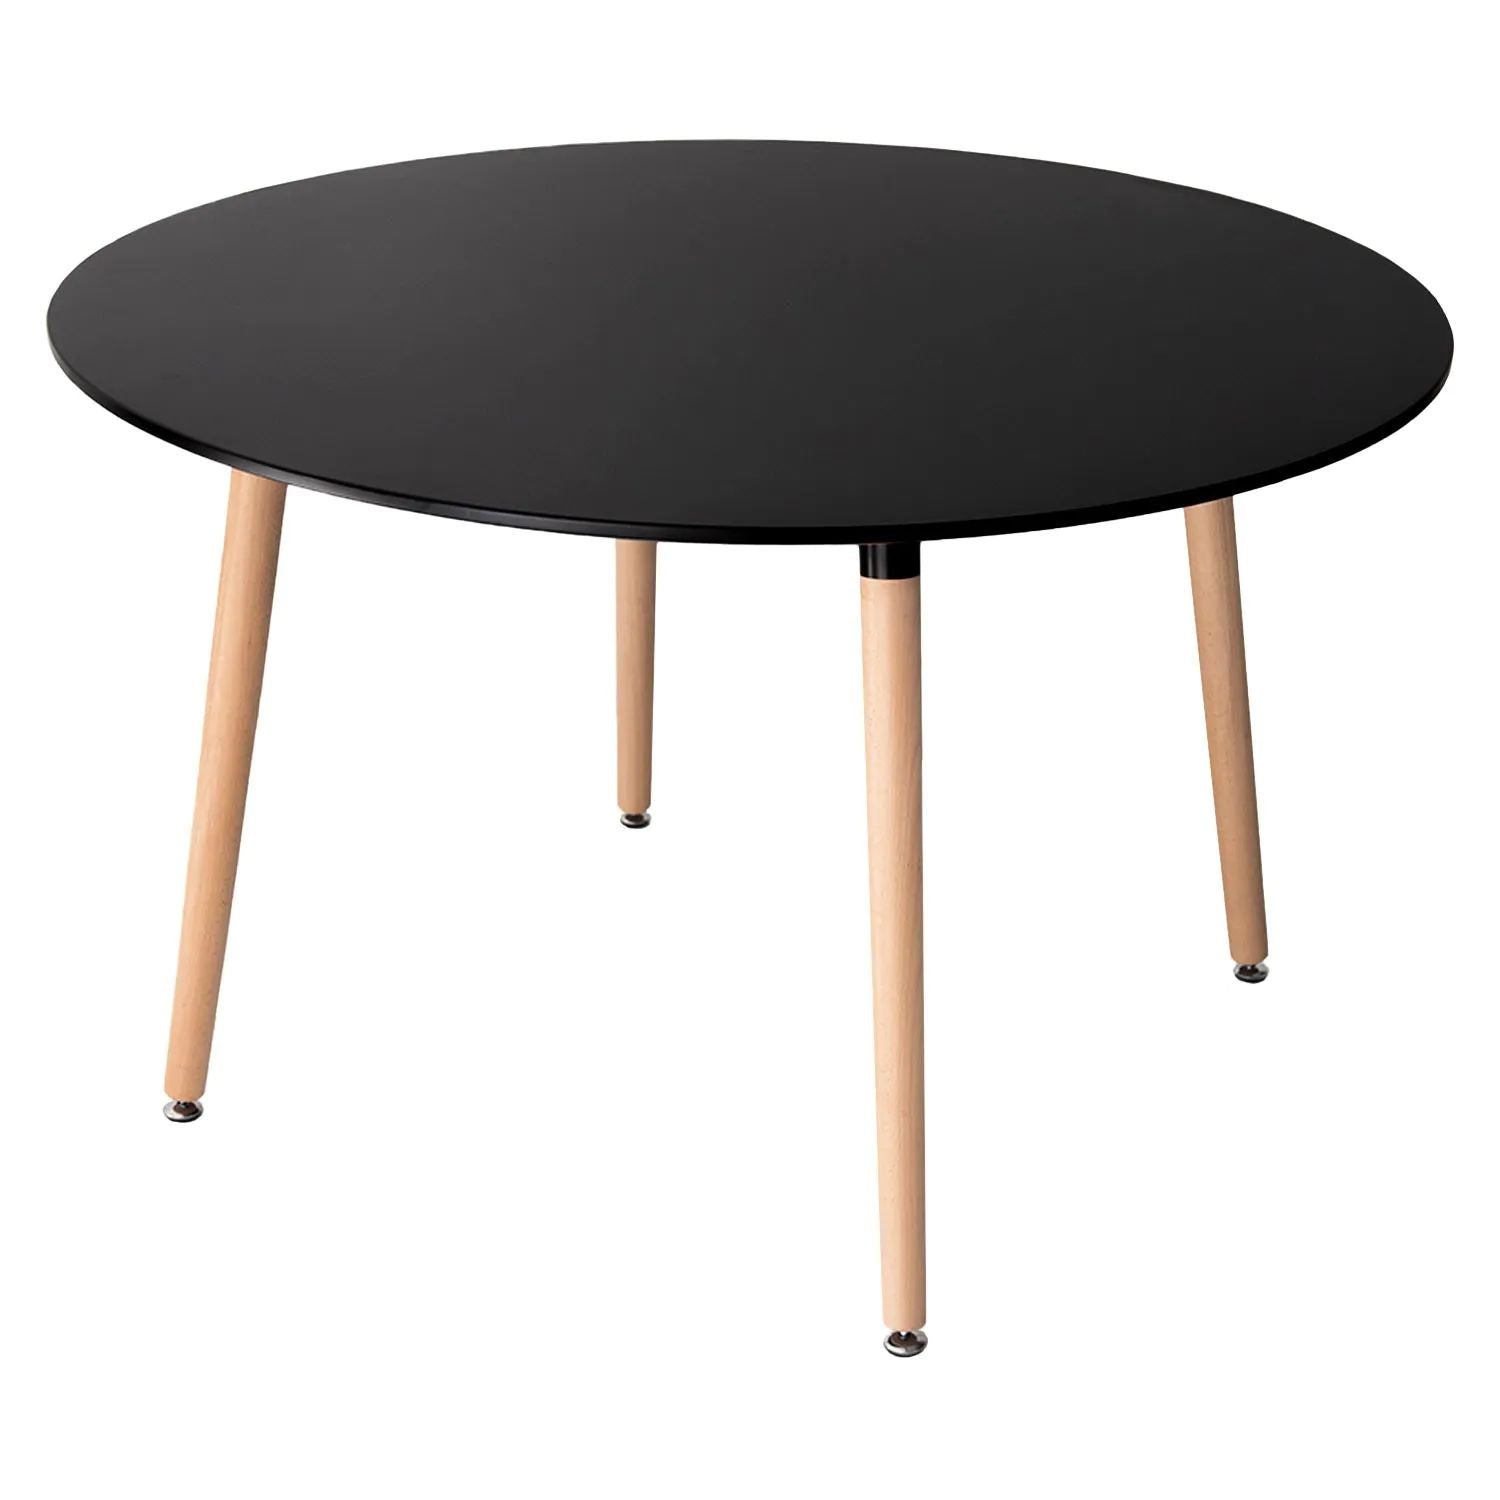 SENJA - Conjunto de mesa redonda 120 cm y 4 sillas escandinavas